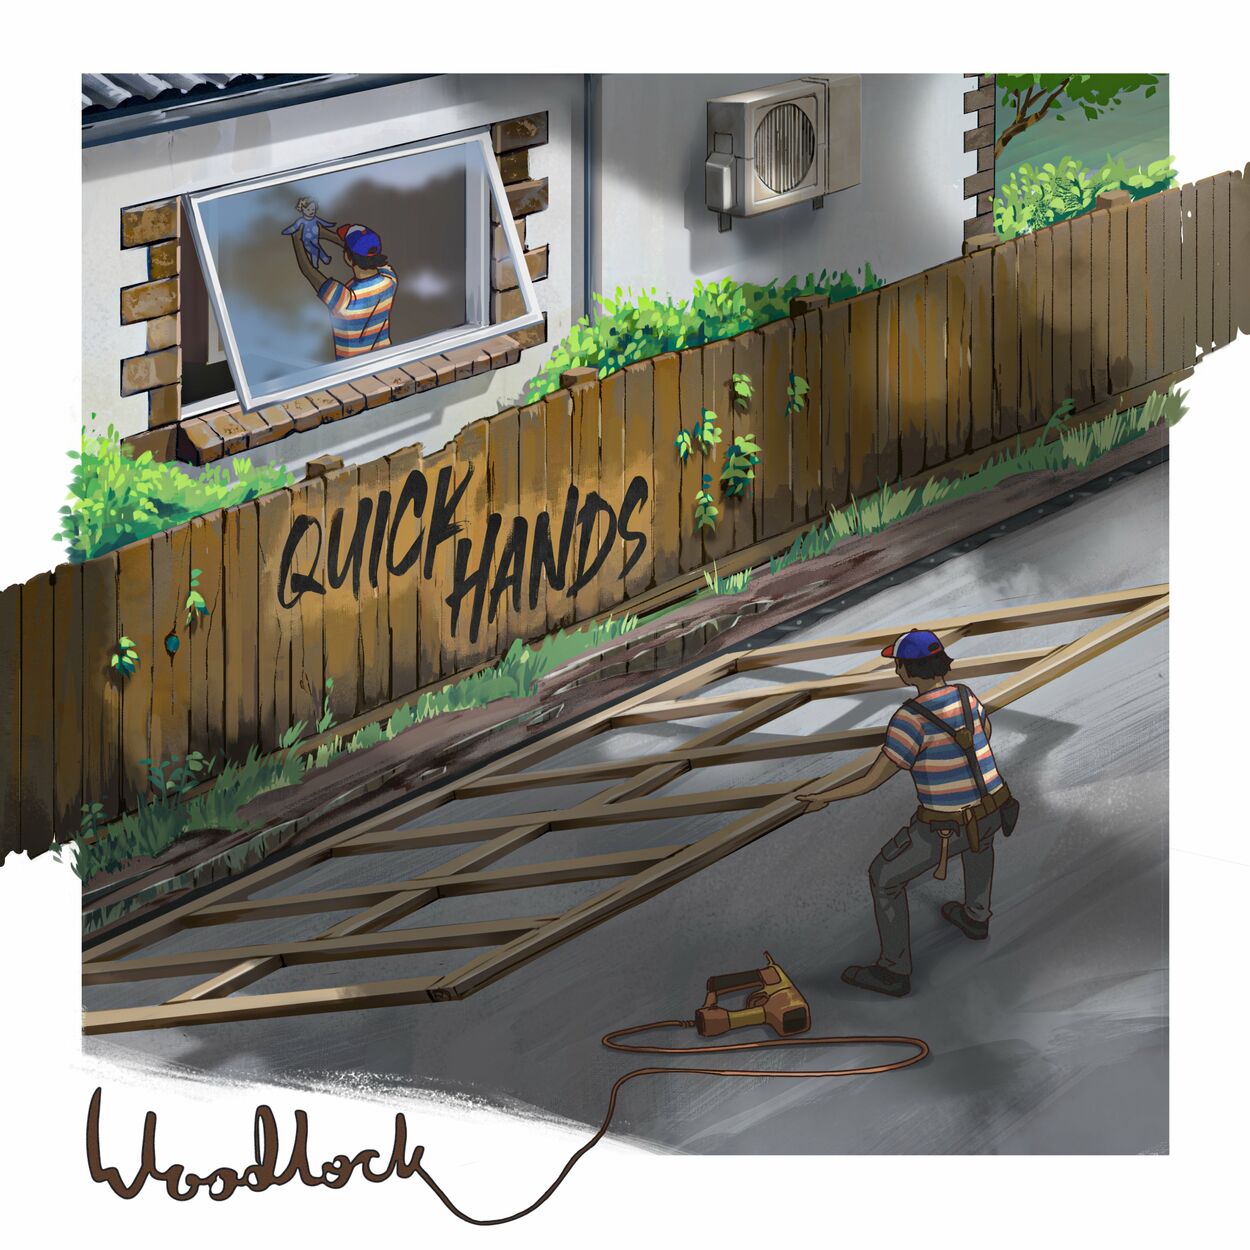 Woodlock-Quick Hands